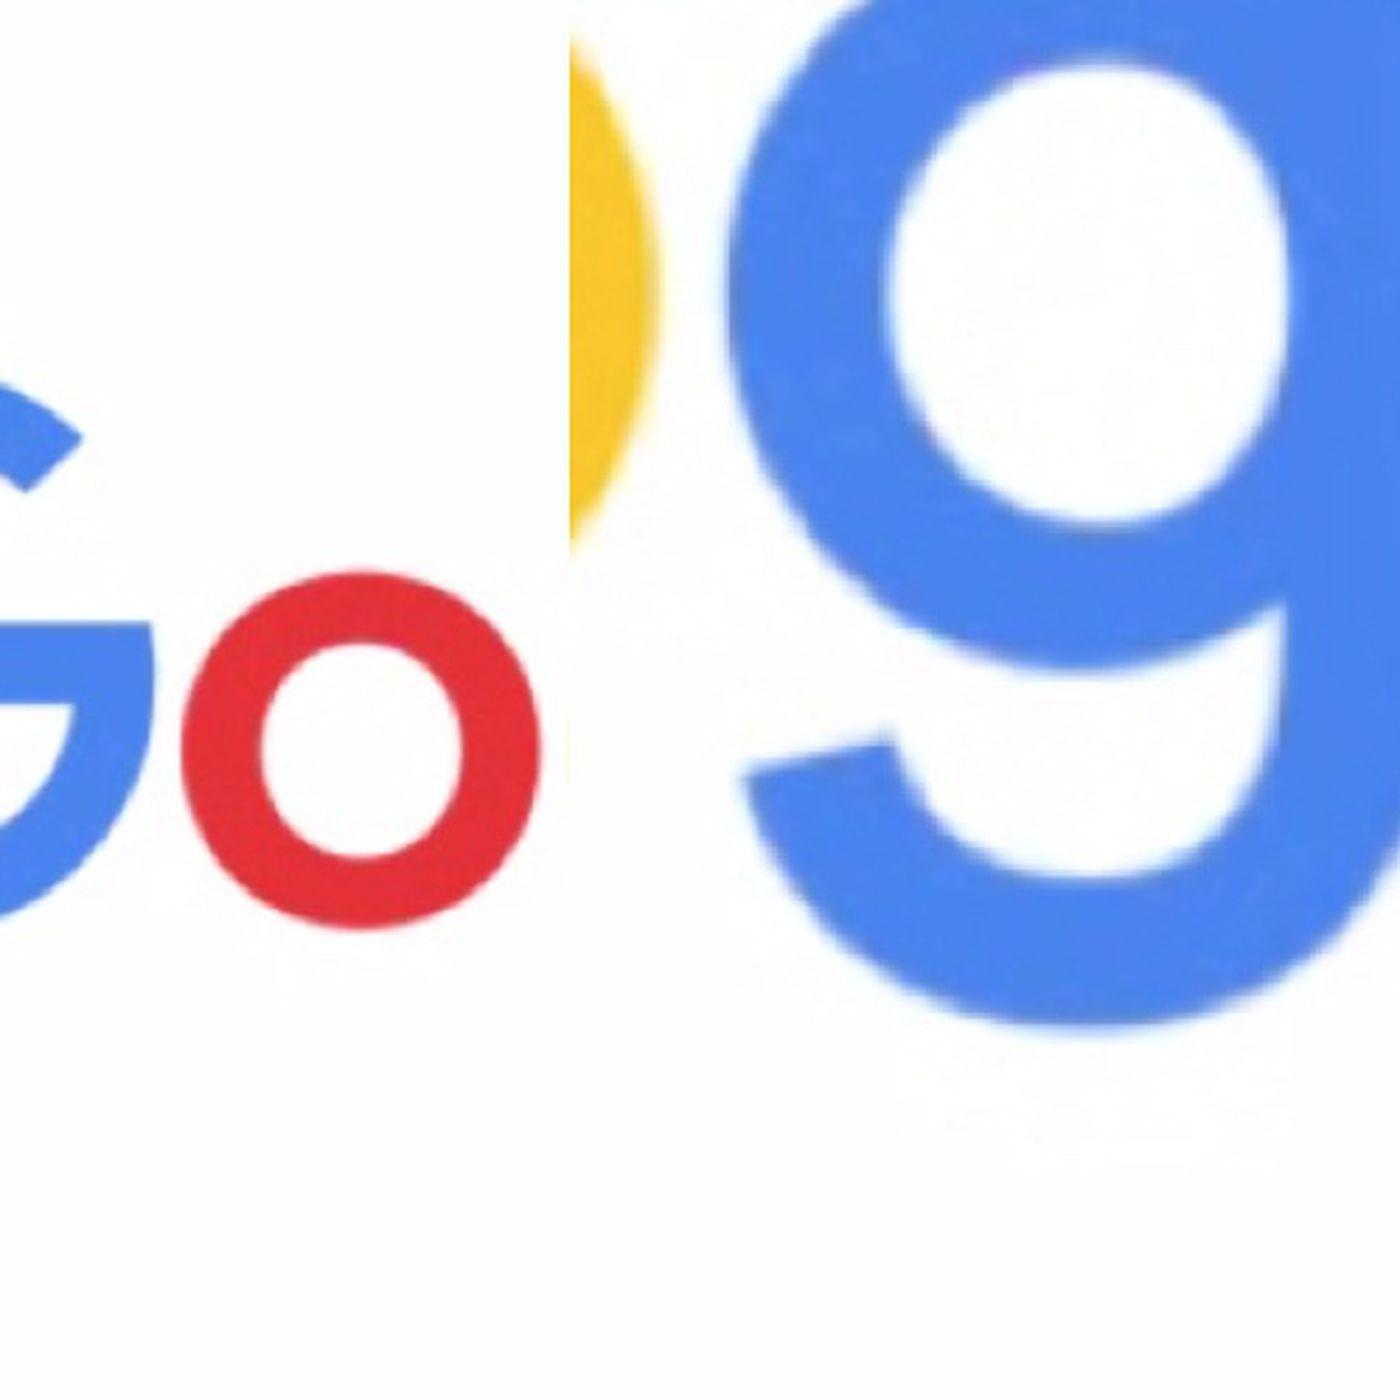 Easter Egg Logo - You won't believe the Easter eggs hidden inside the new Google logo